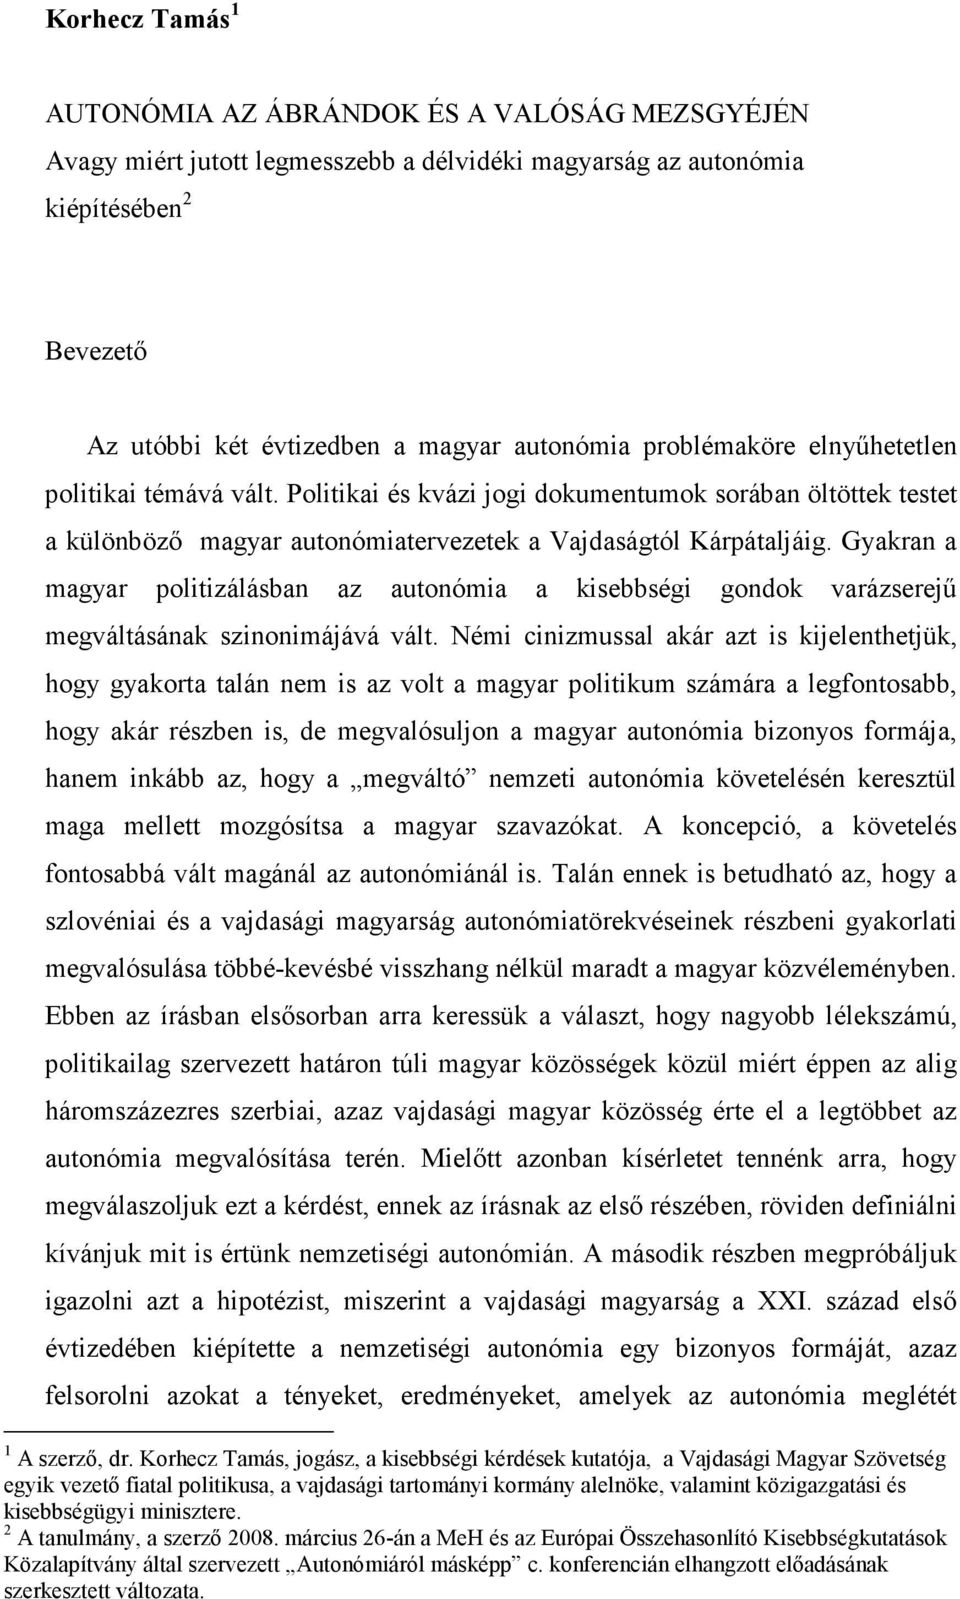 Gyakran a magyar politizálásban az autonómia a kisebbségi gondok varázserejő megváltásának szinonimájává vált.